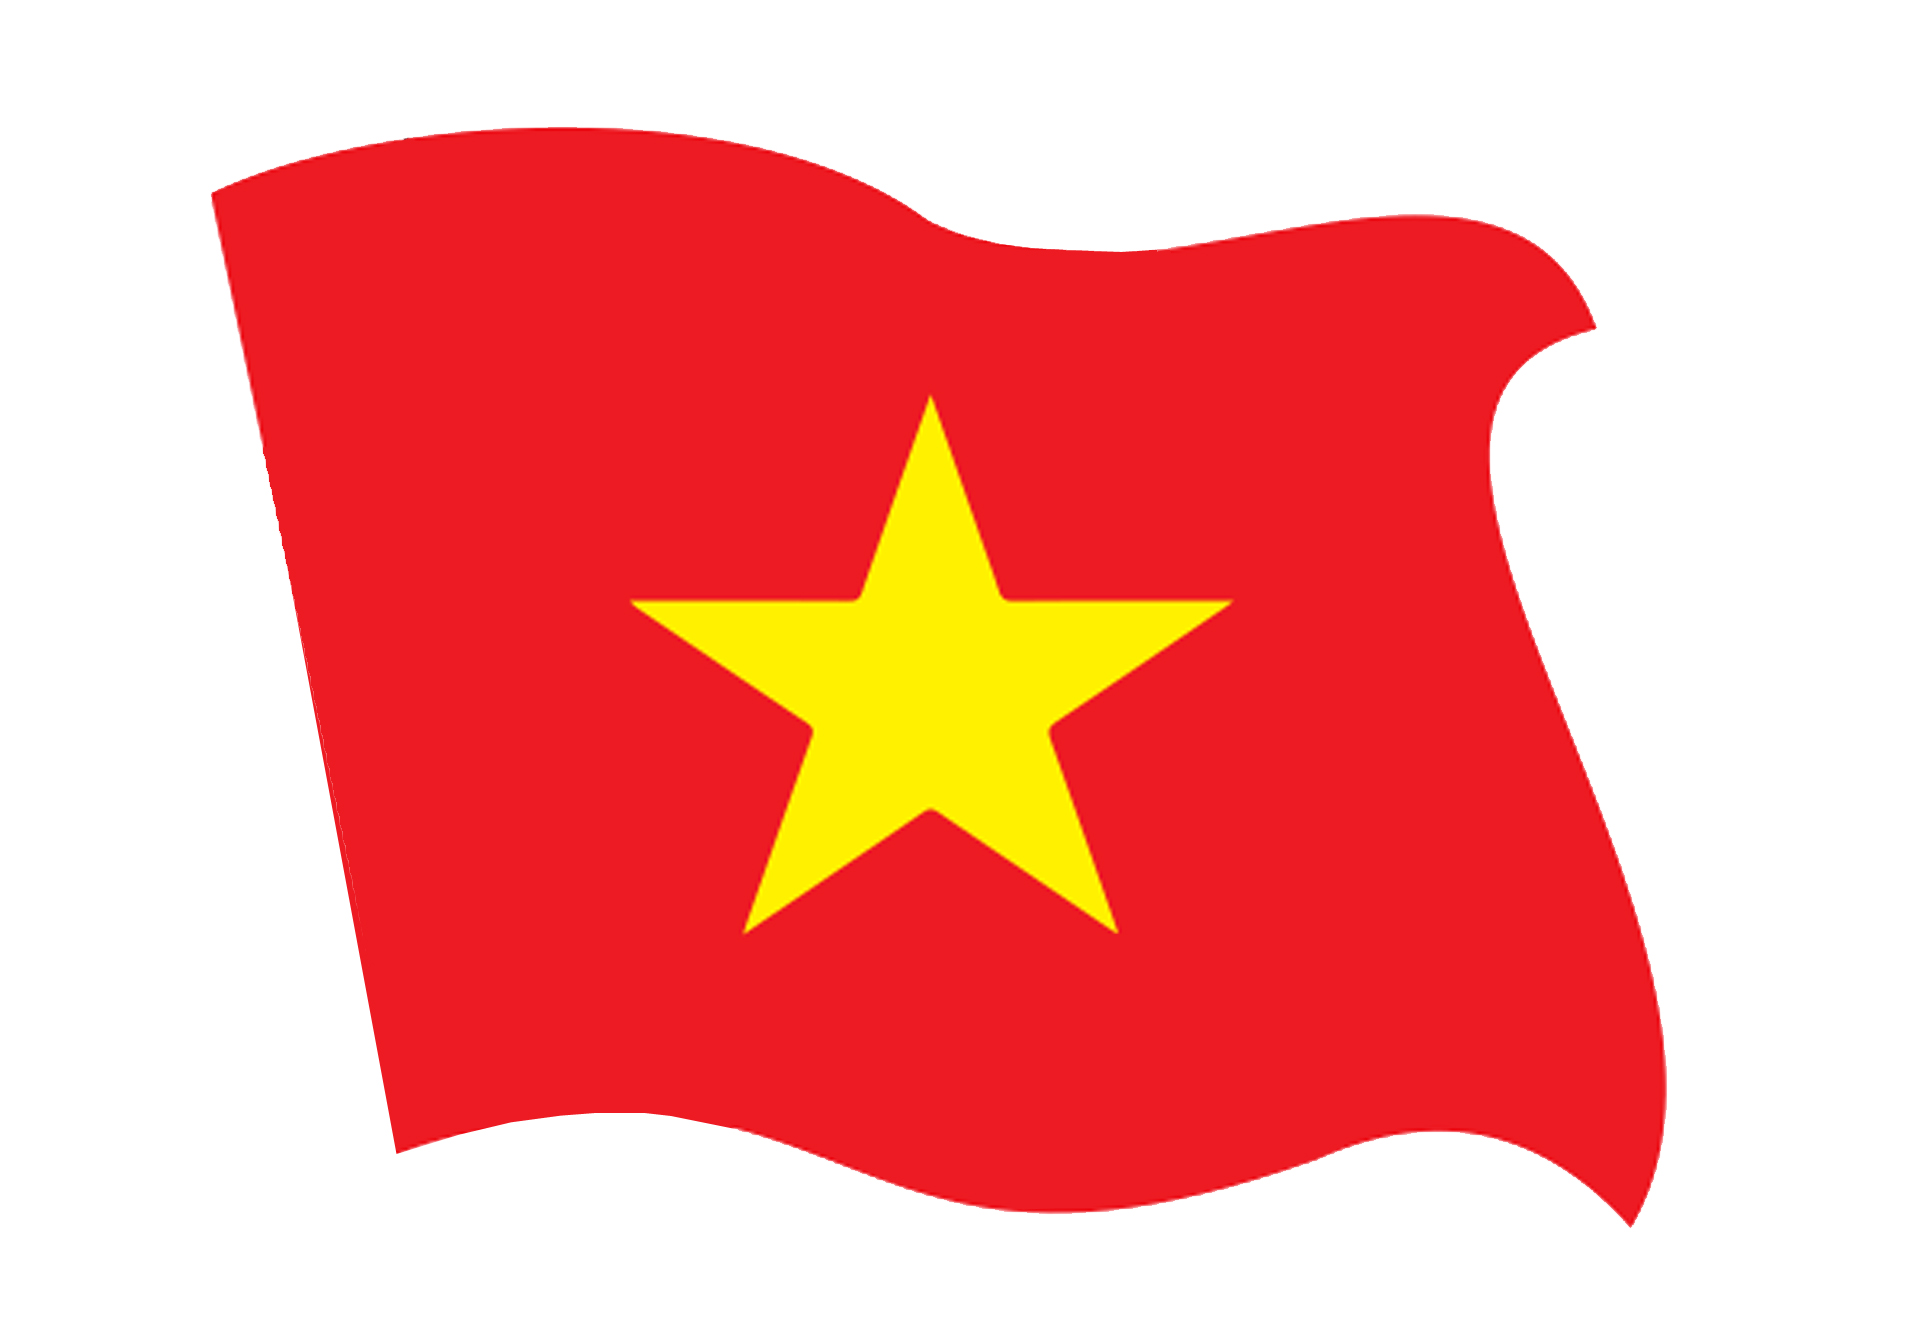 Cờ Việt Nam PNG mang đến cho người xem sự thú vị khi xem lá cờ của đất nước chúng ta. Sử dụng định dạng ảnh PNG làm cho việc sử dụng dễ dàng hơn bao giờ hết. Hình ảnh sắc nét và màu sắc đậm đà sẽ khiến những người yêu thích cờ bội phục và quyến rũ.